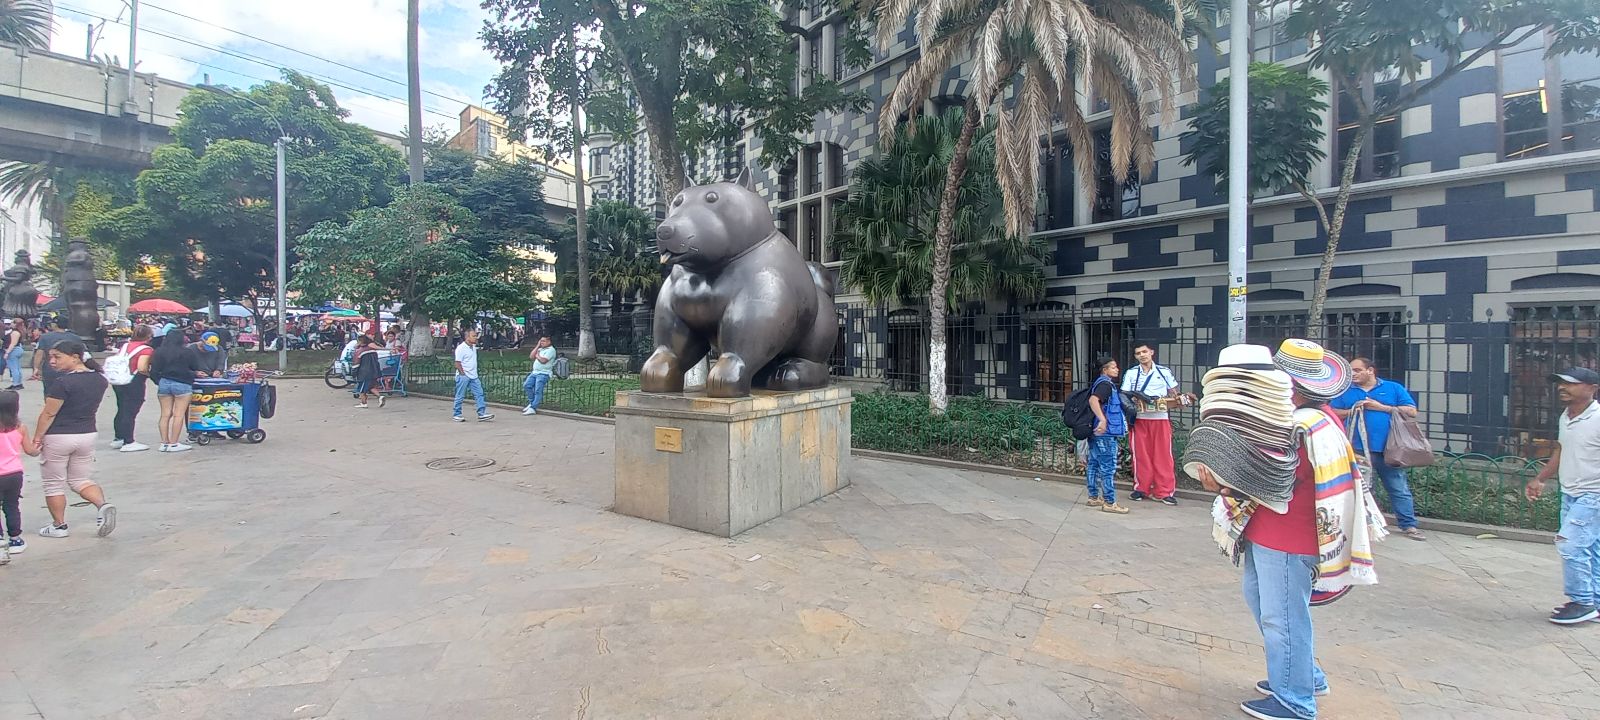 PLaza de Botero de Medellin, Colombia